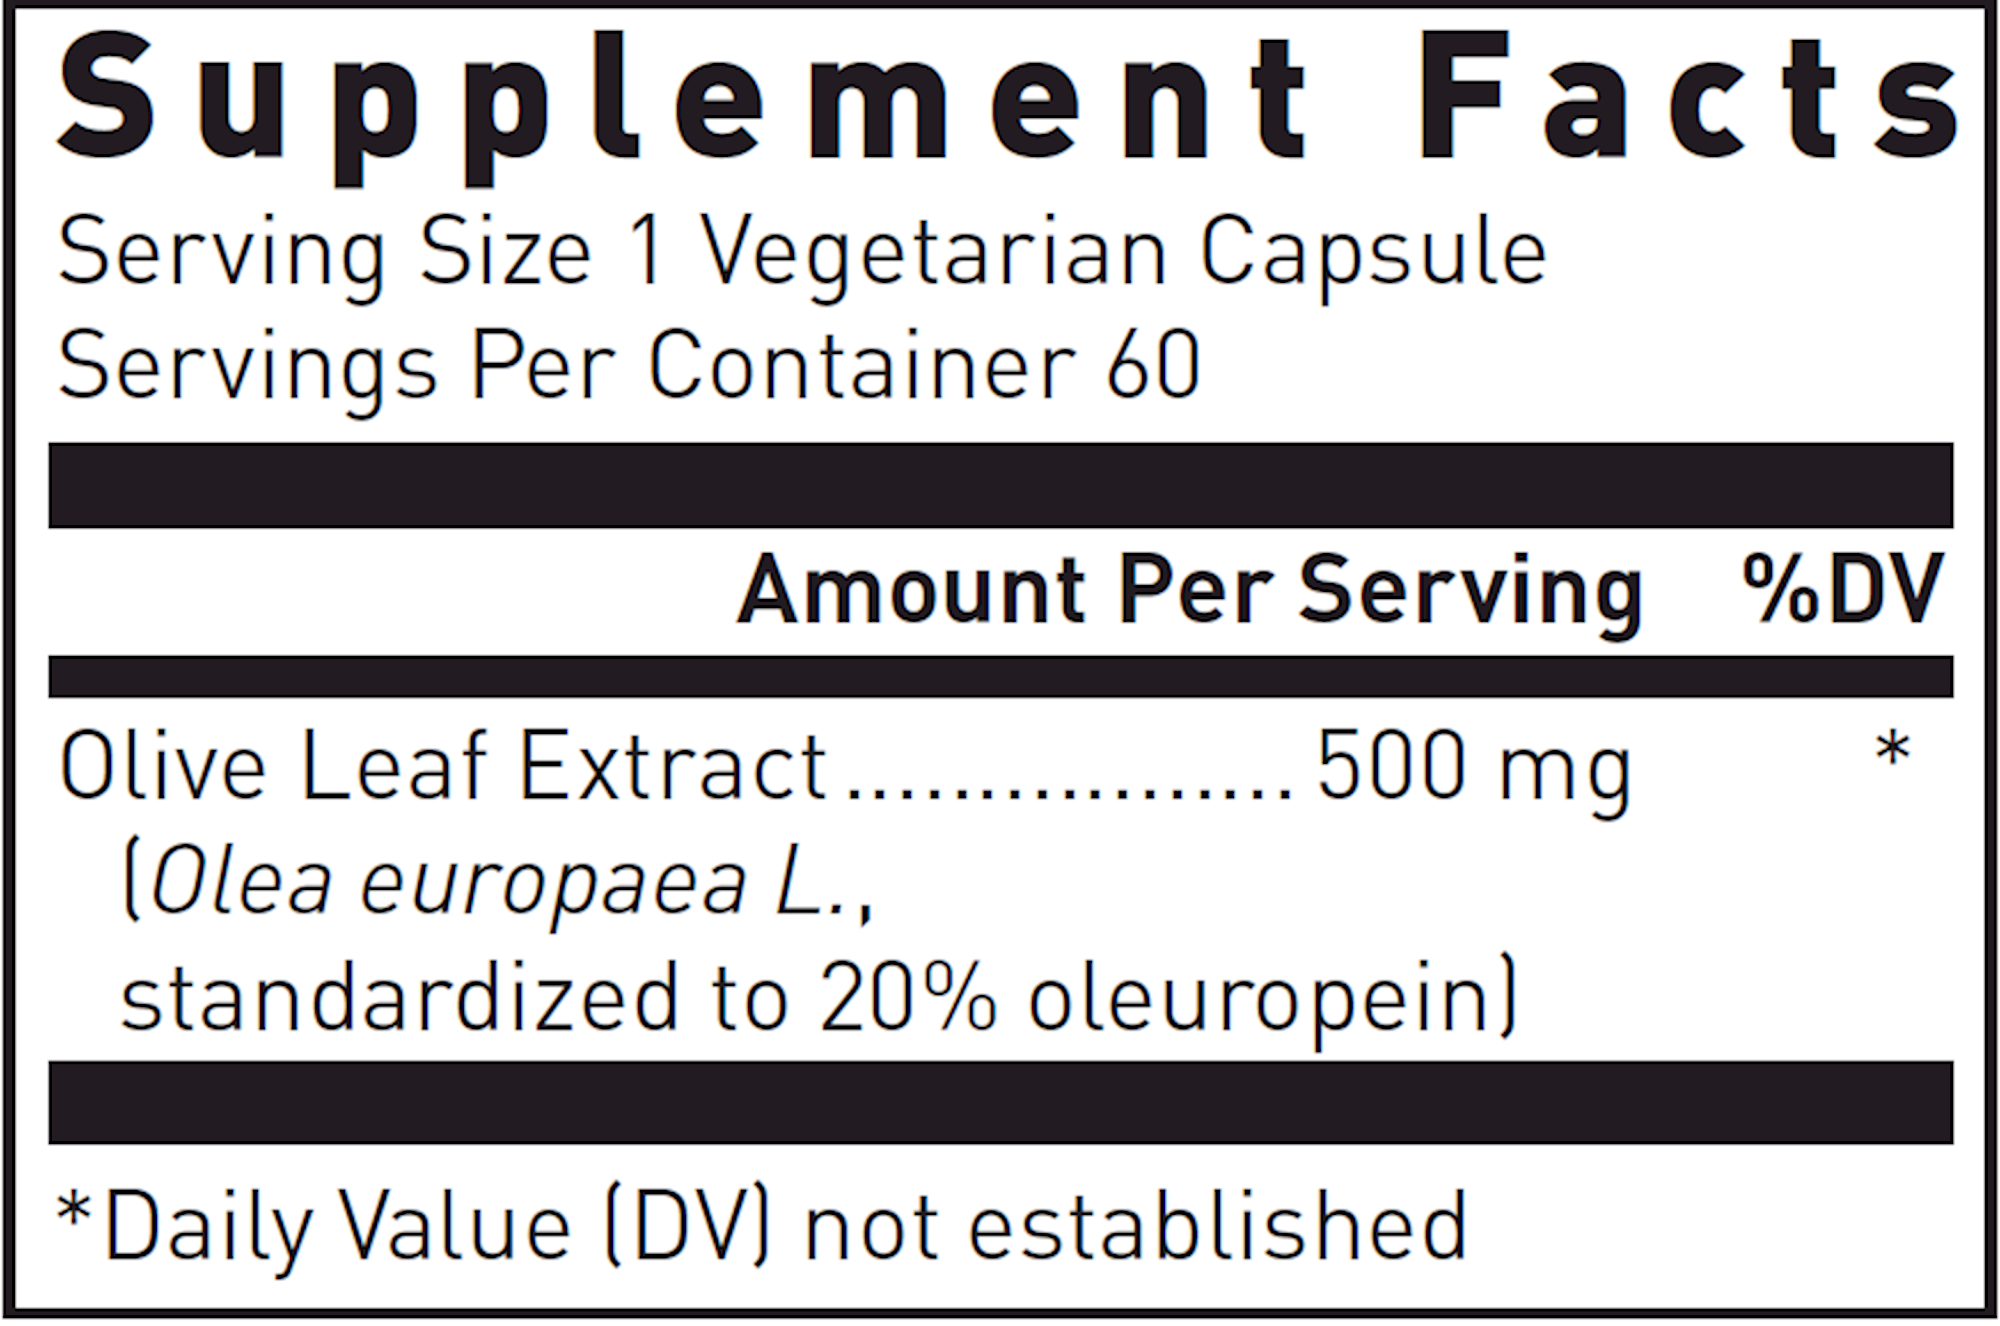 Douglas Laboratories Olive Leaf extract 60 vegcaps